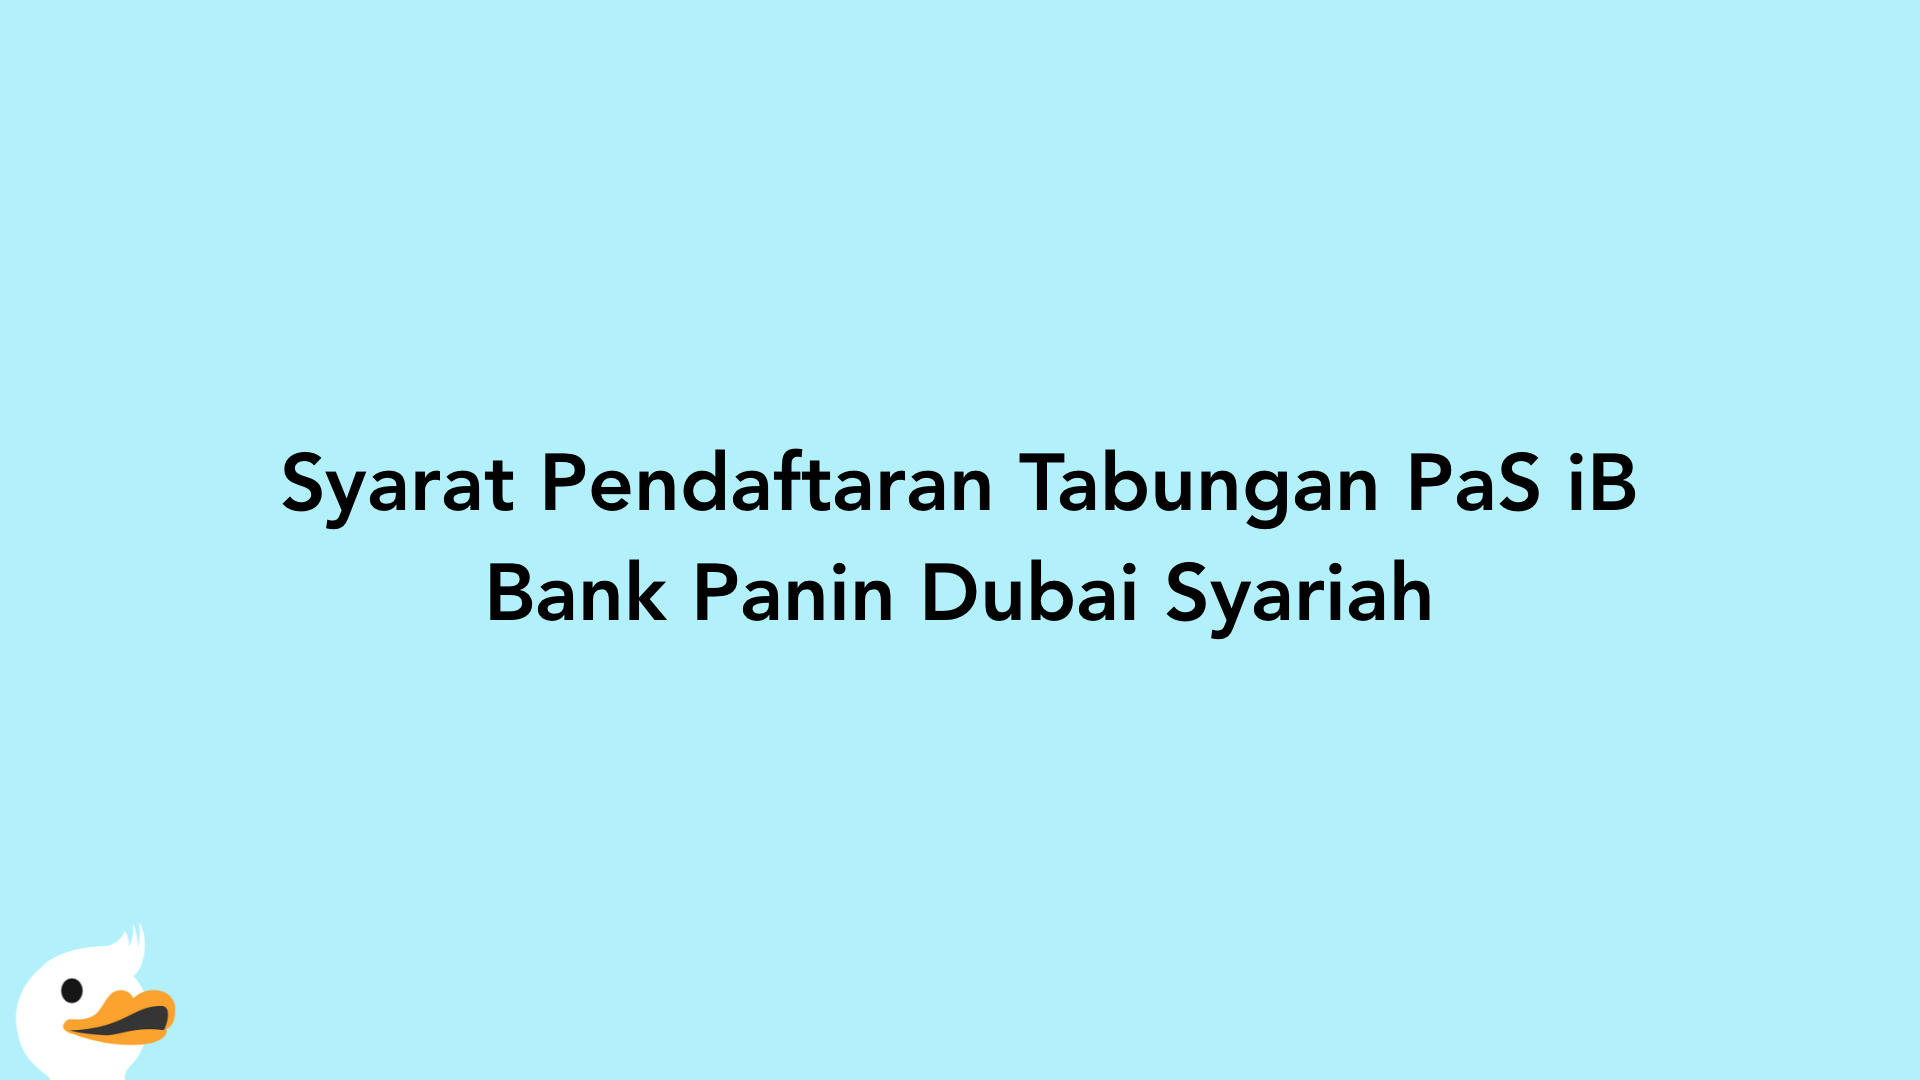 Syarat Pendaftaran Tabungan PaS iB Bank Panin Dubai Syariah